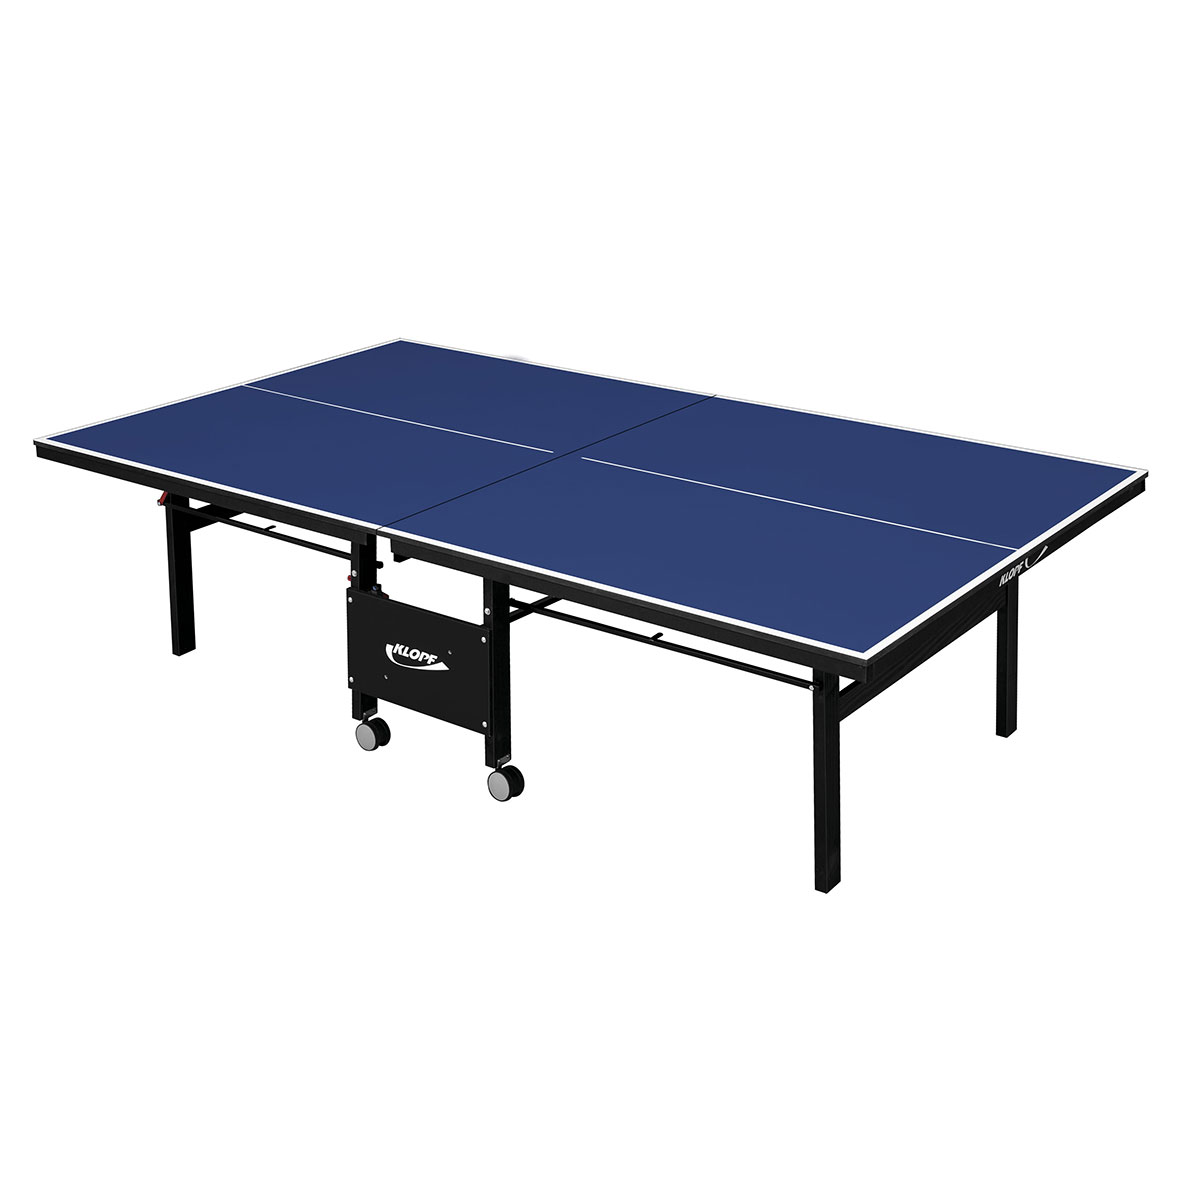 Mesa De Ping Pong 15 Mm De 2,74 X 1,52 X 0,76 M